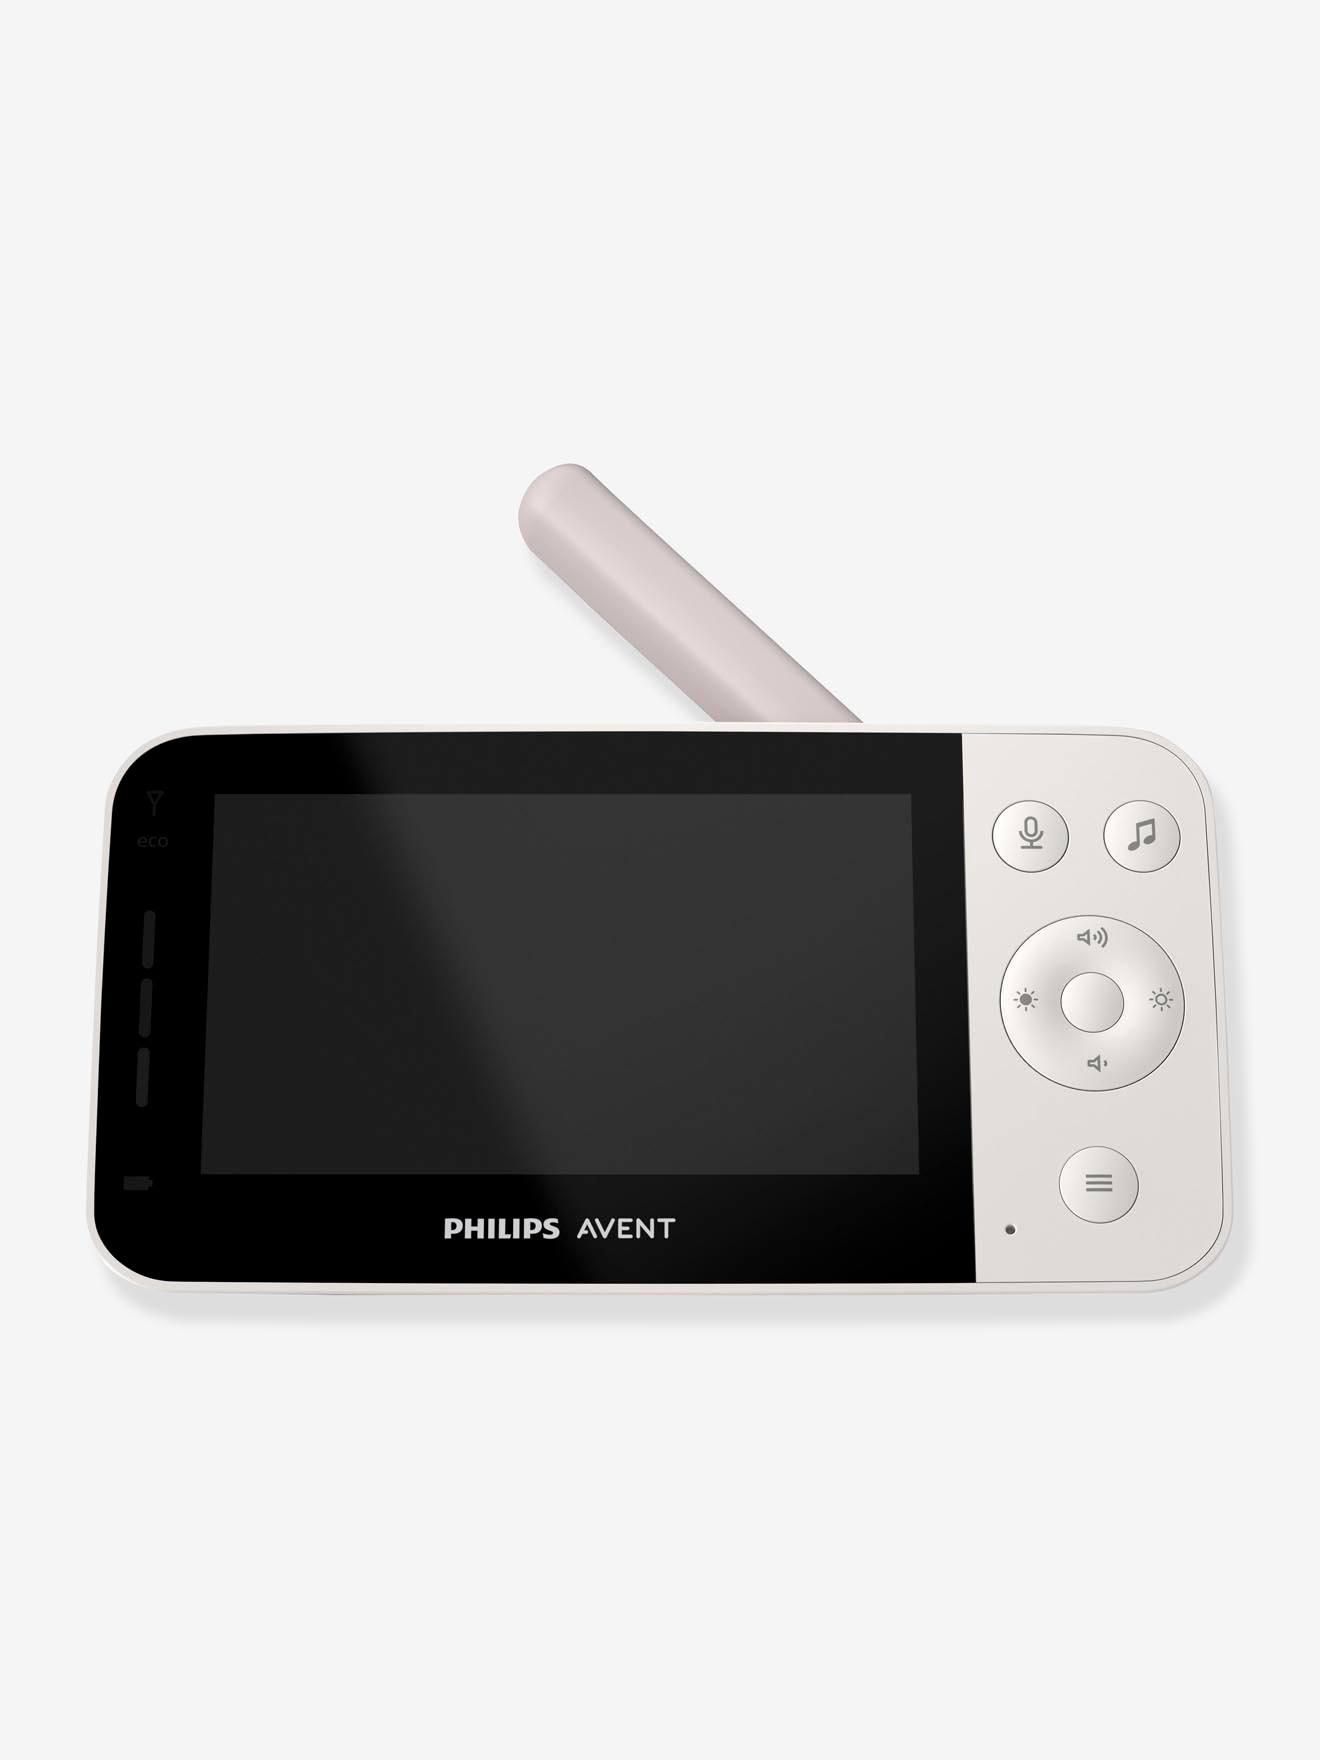 Philips Avent Babyphone caméra Full HD 1080p, Vision Nocturne Infrarouge,  Audio bidirectionnel, portée illimitée, Secure Connect, 12 Heures  d'autonomie (modèle SCD923/26) : : Bébé et Puériculture